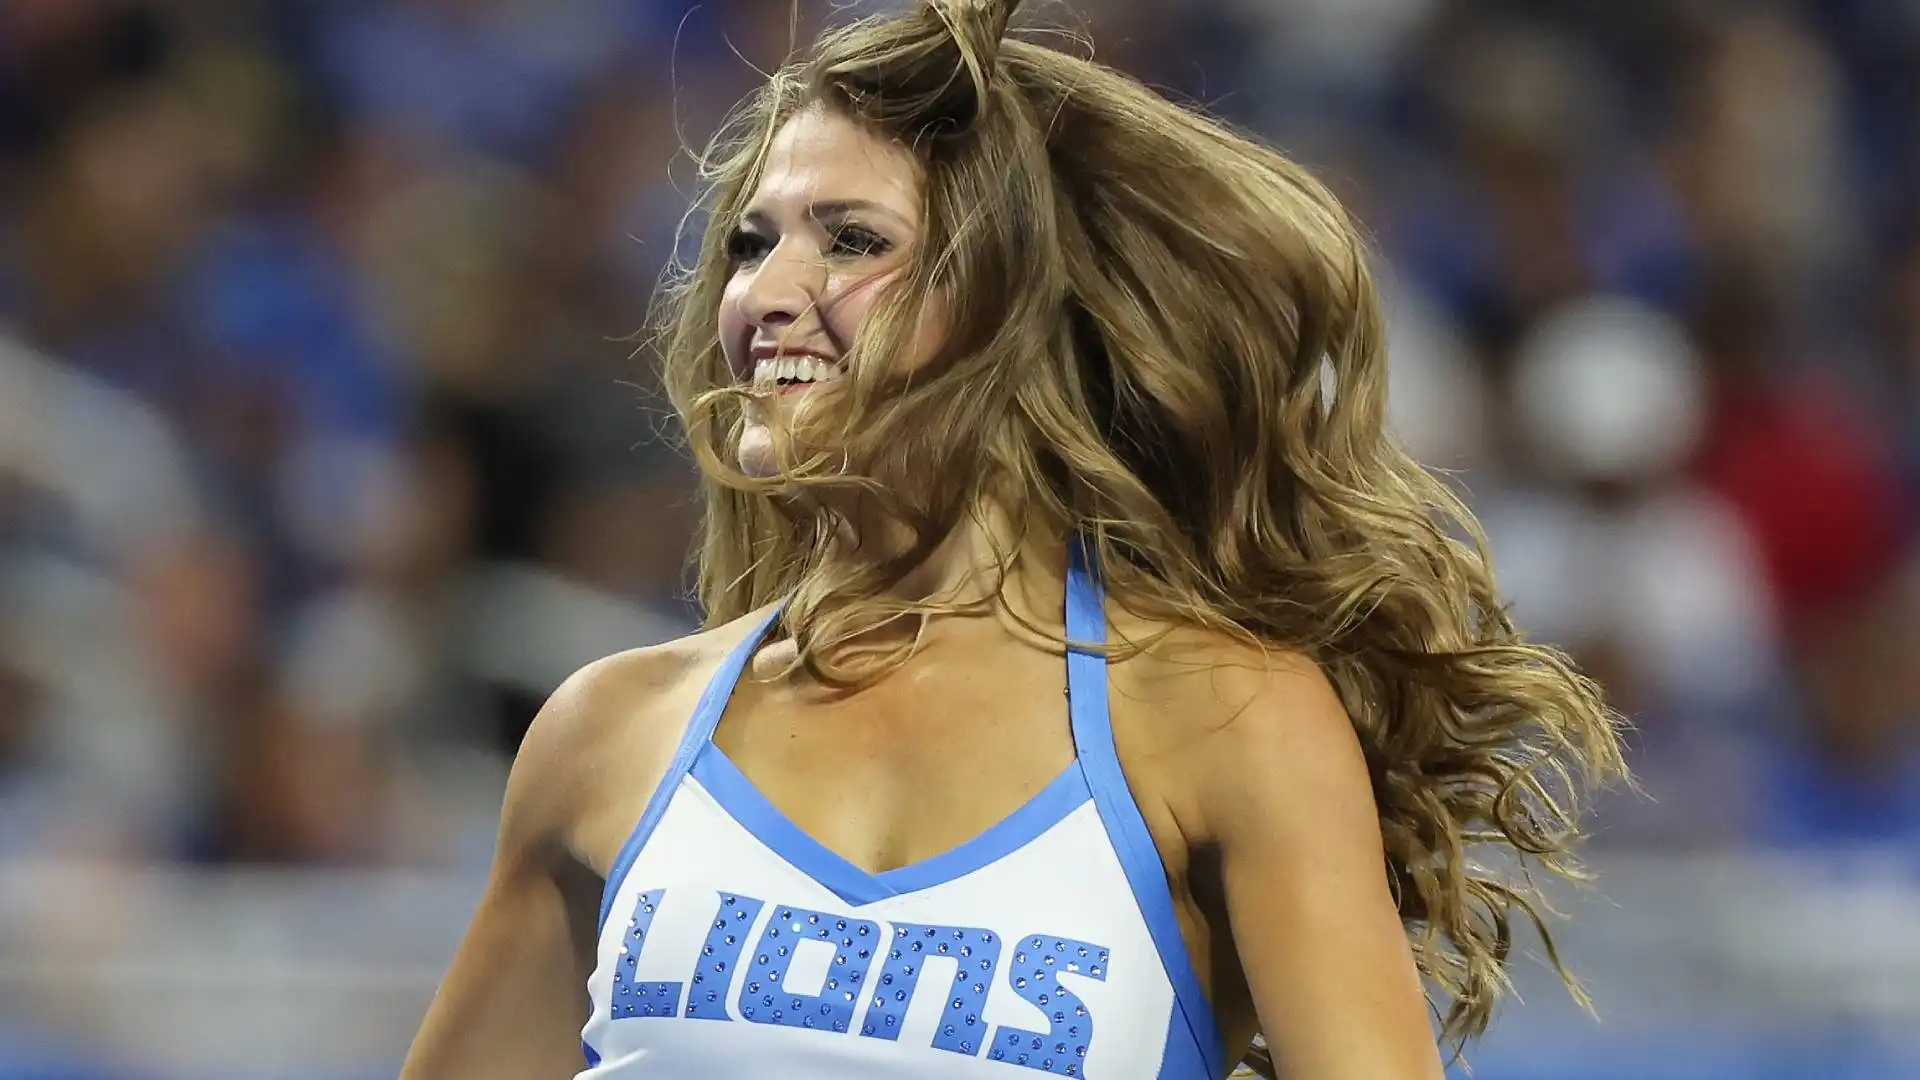 Le cheerleaders dei Detroit Lions si esibiscono in ogni partita casalinga lasciando il pubblico a bocca aperta